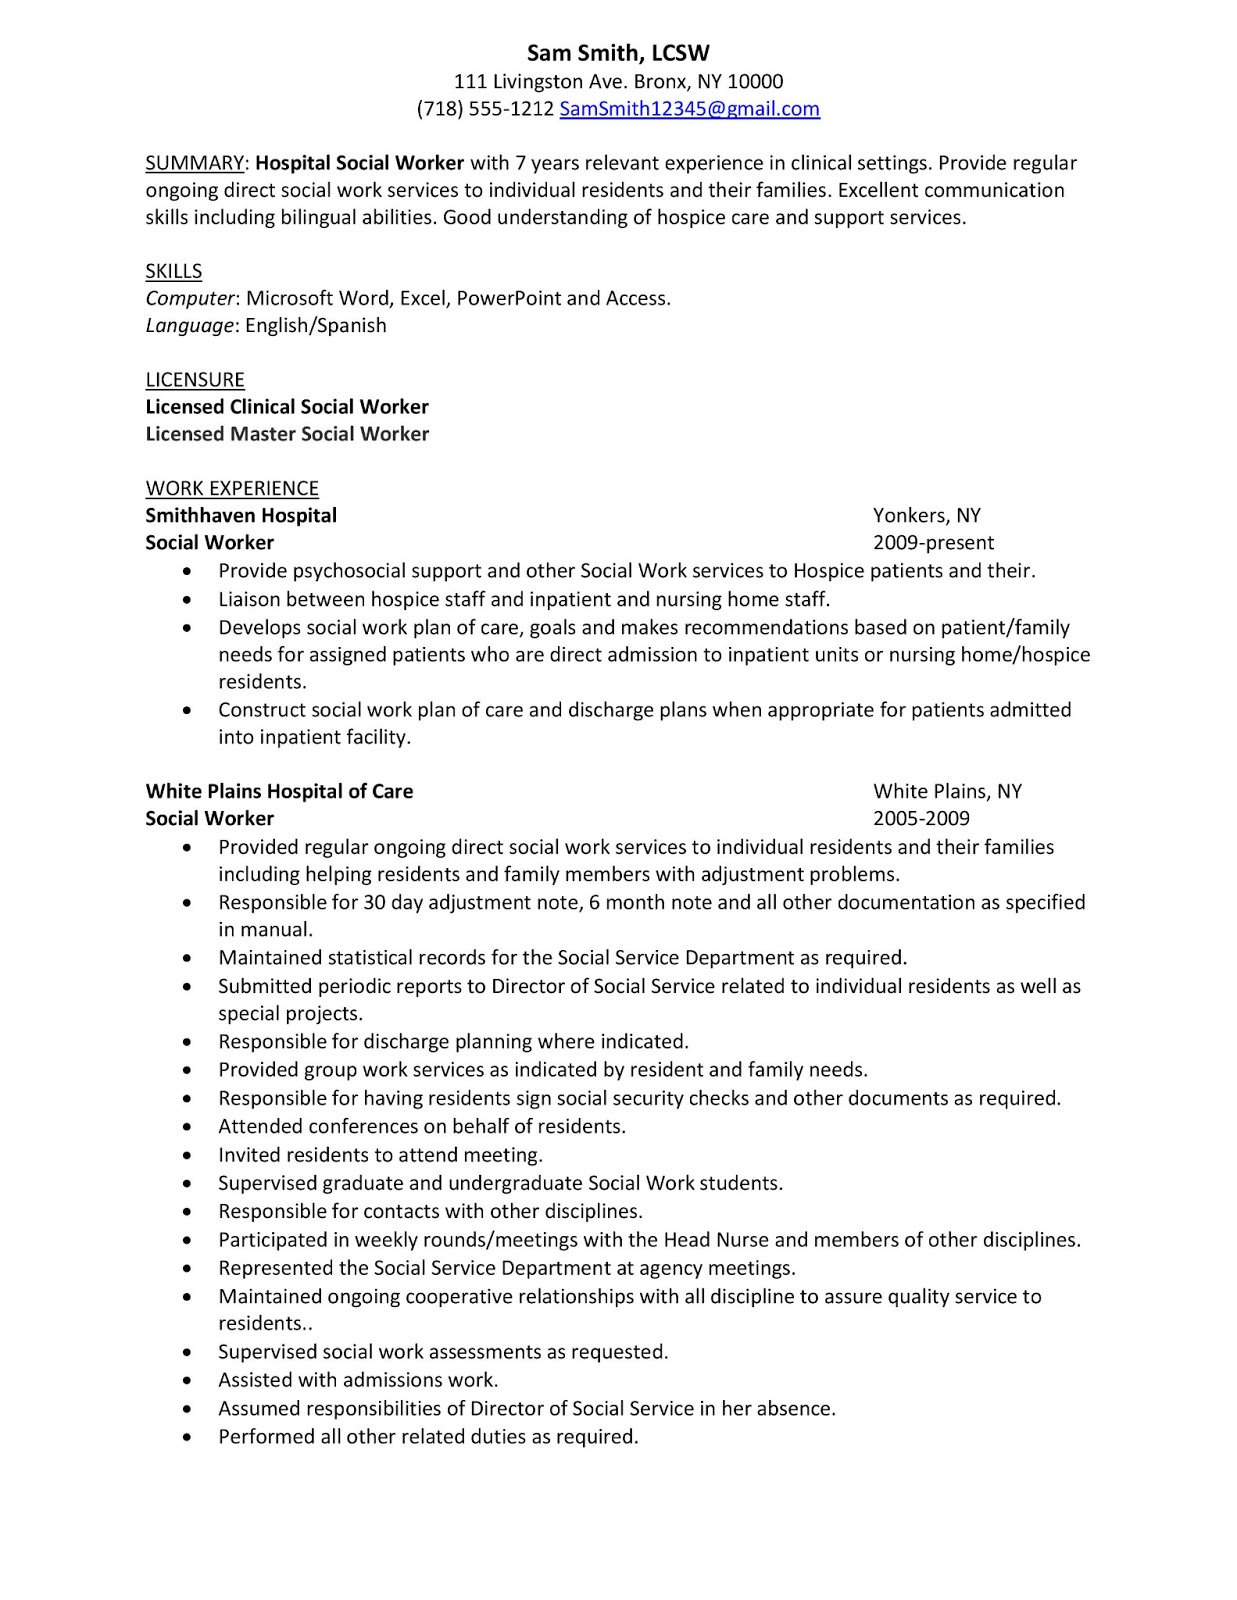 Resume help social work